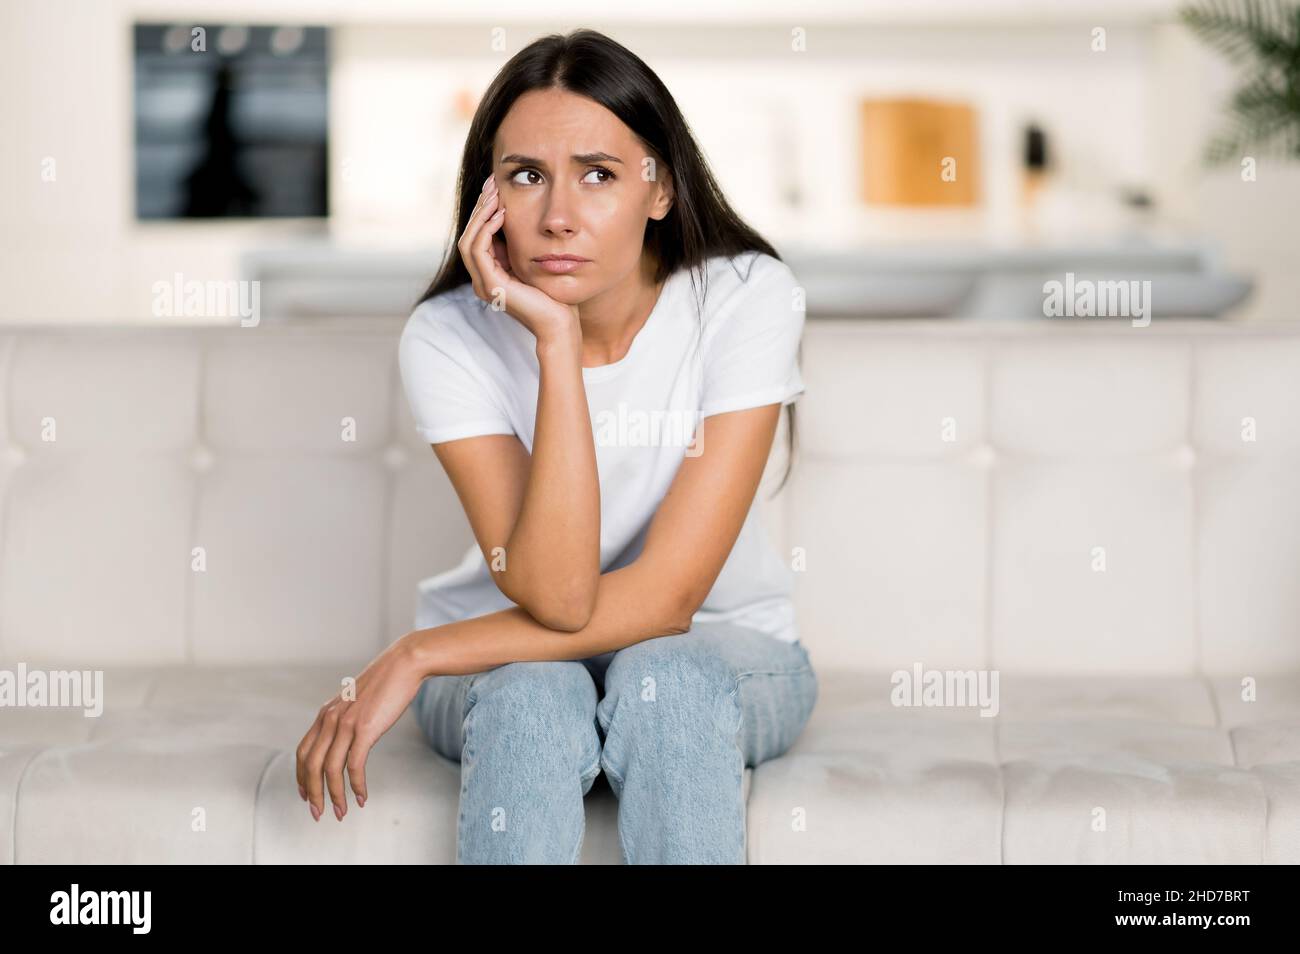 Enttäuscht unglückliche kaukasische junge Frau, die auf dem Sofa im Wohnzimmer sitzt, hat persönliche Probleme, Versagen bei der Arbeit, Depressionen, schlechte Laune, trauriges Mädchen ist zu Hause einsam Stockfoto